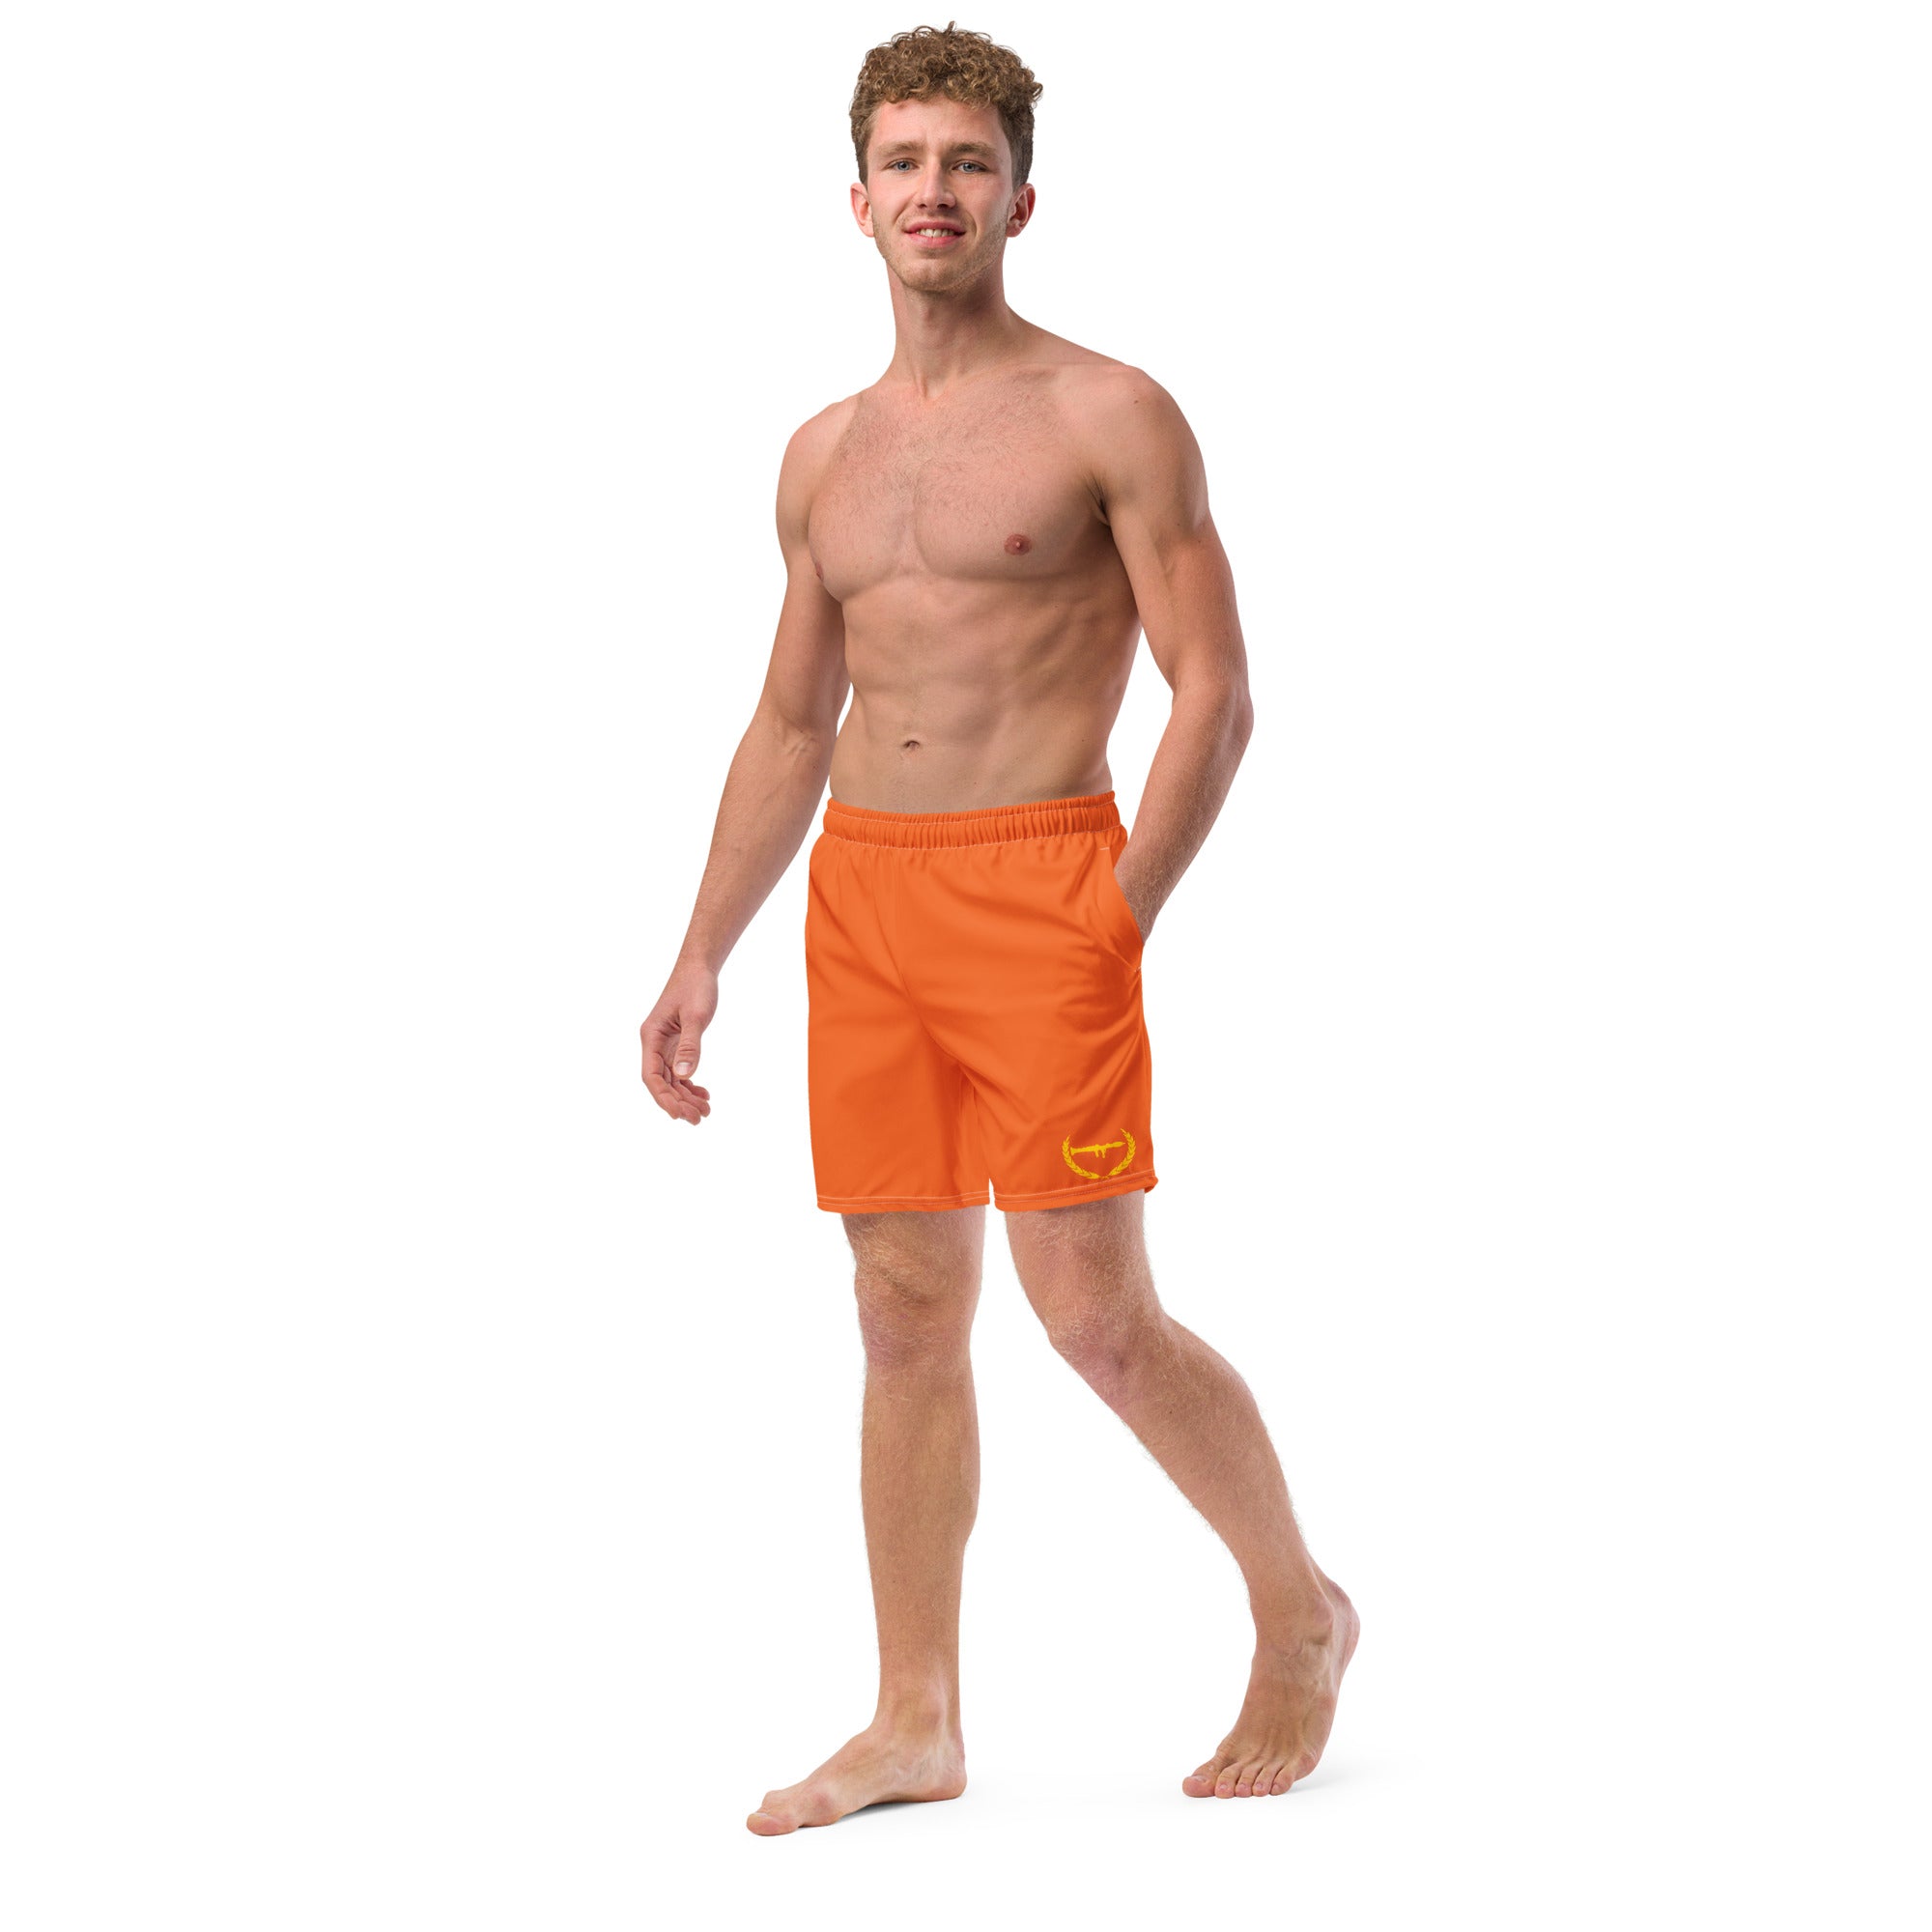 Premiumjunk Logo Men's swim trunks